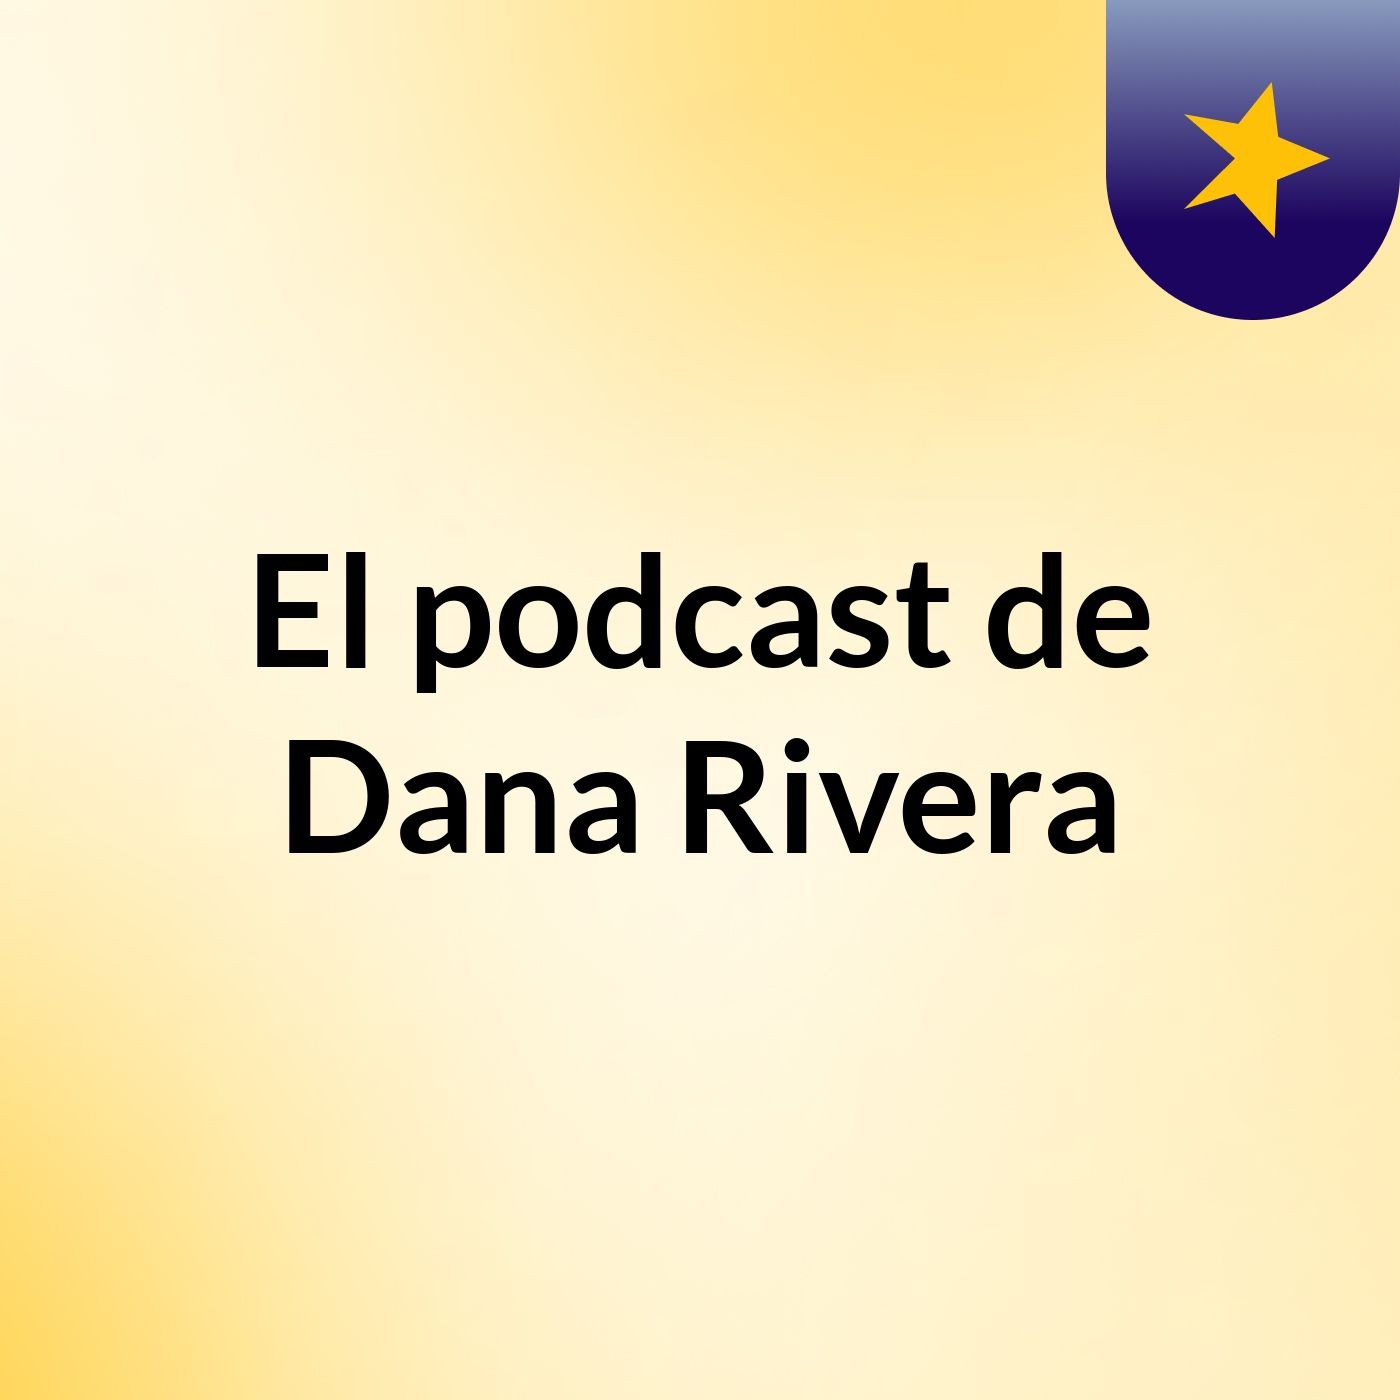 El podcast de Dana Rivera